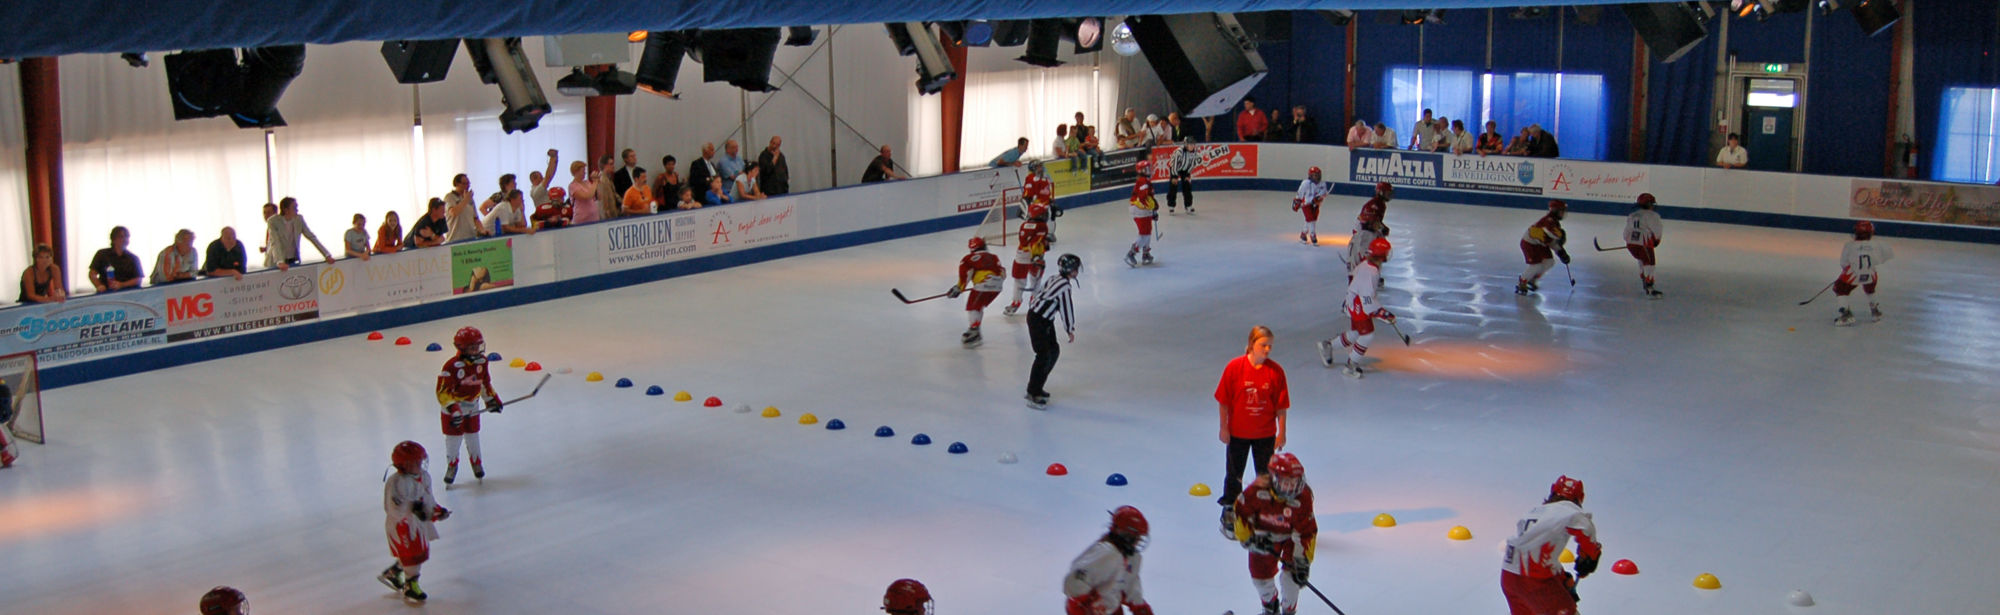 Ijshockey bij Minli Schaatsparadijs